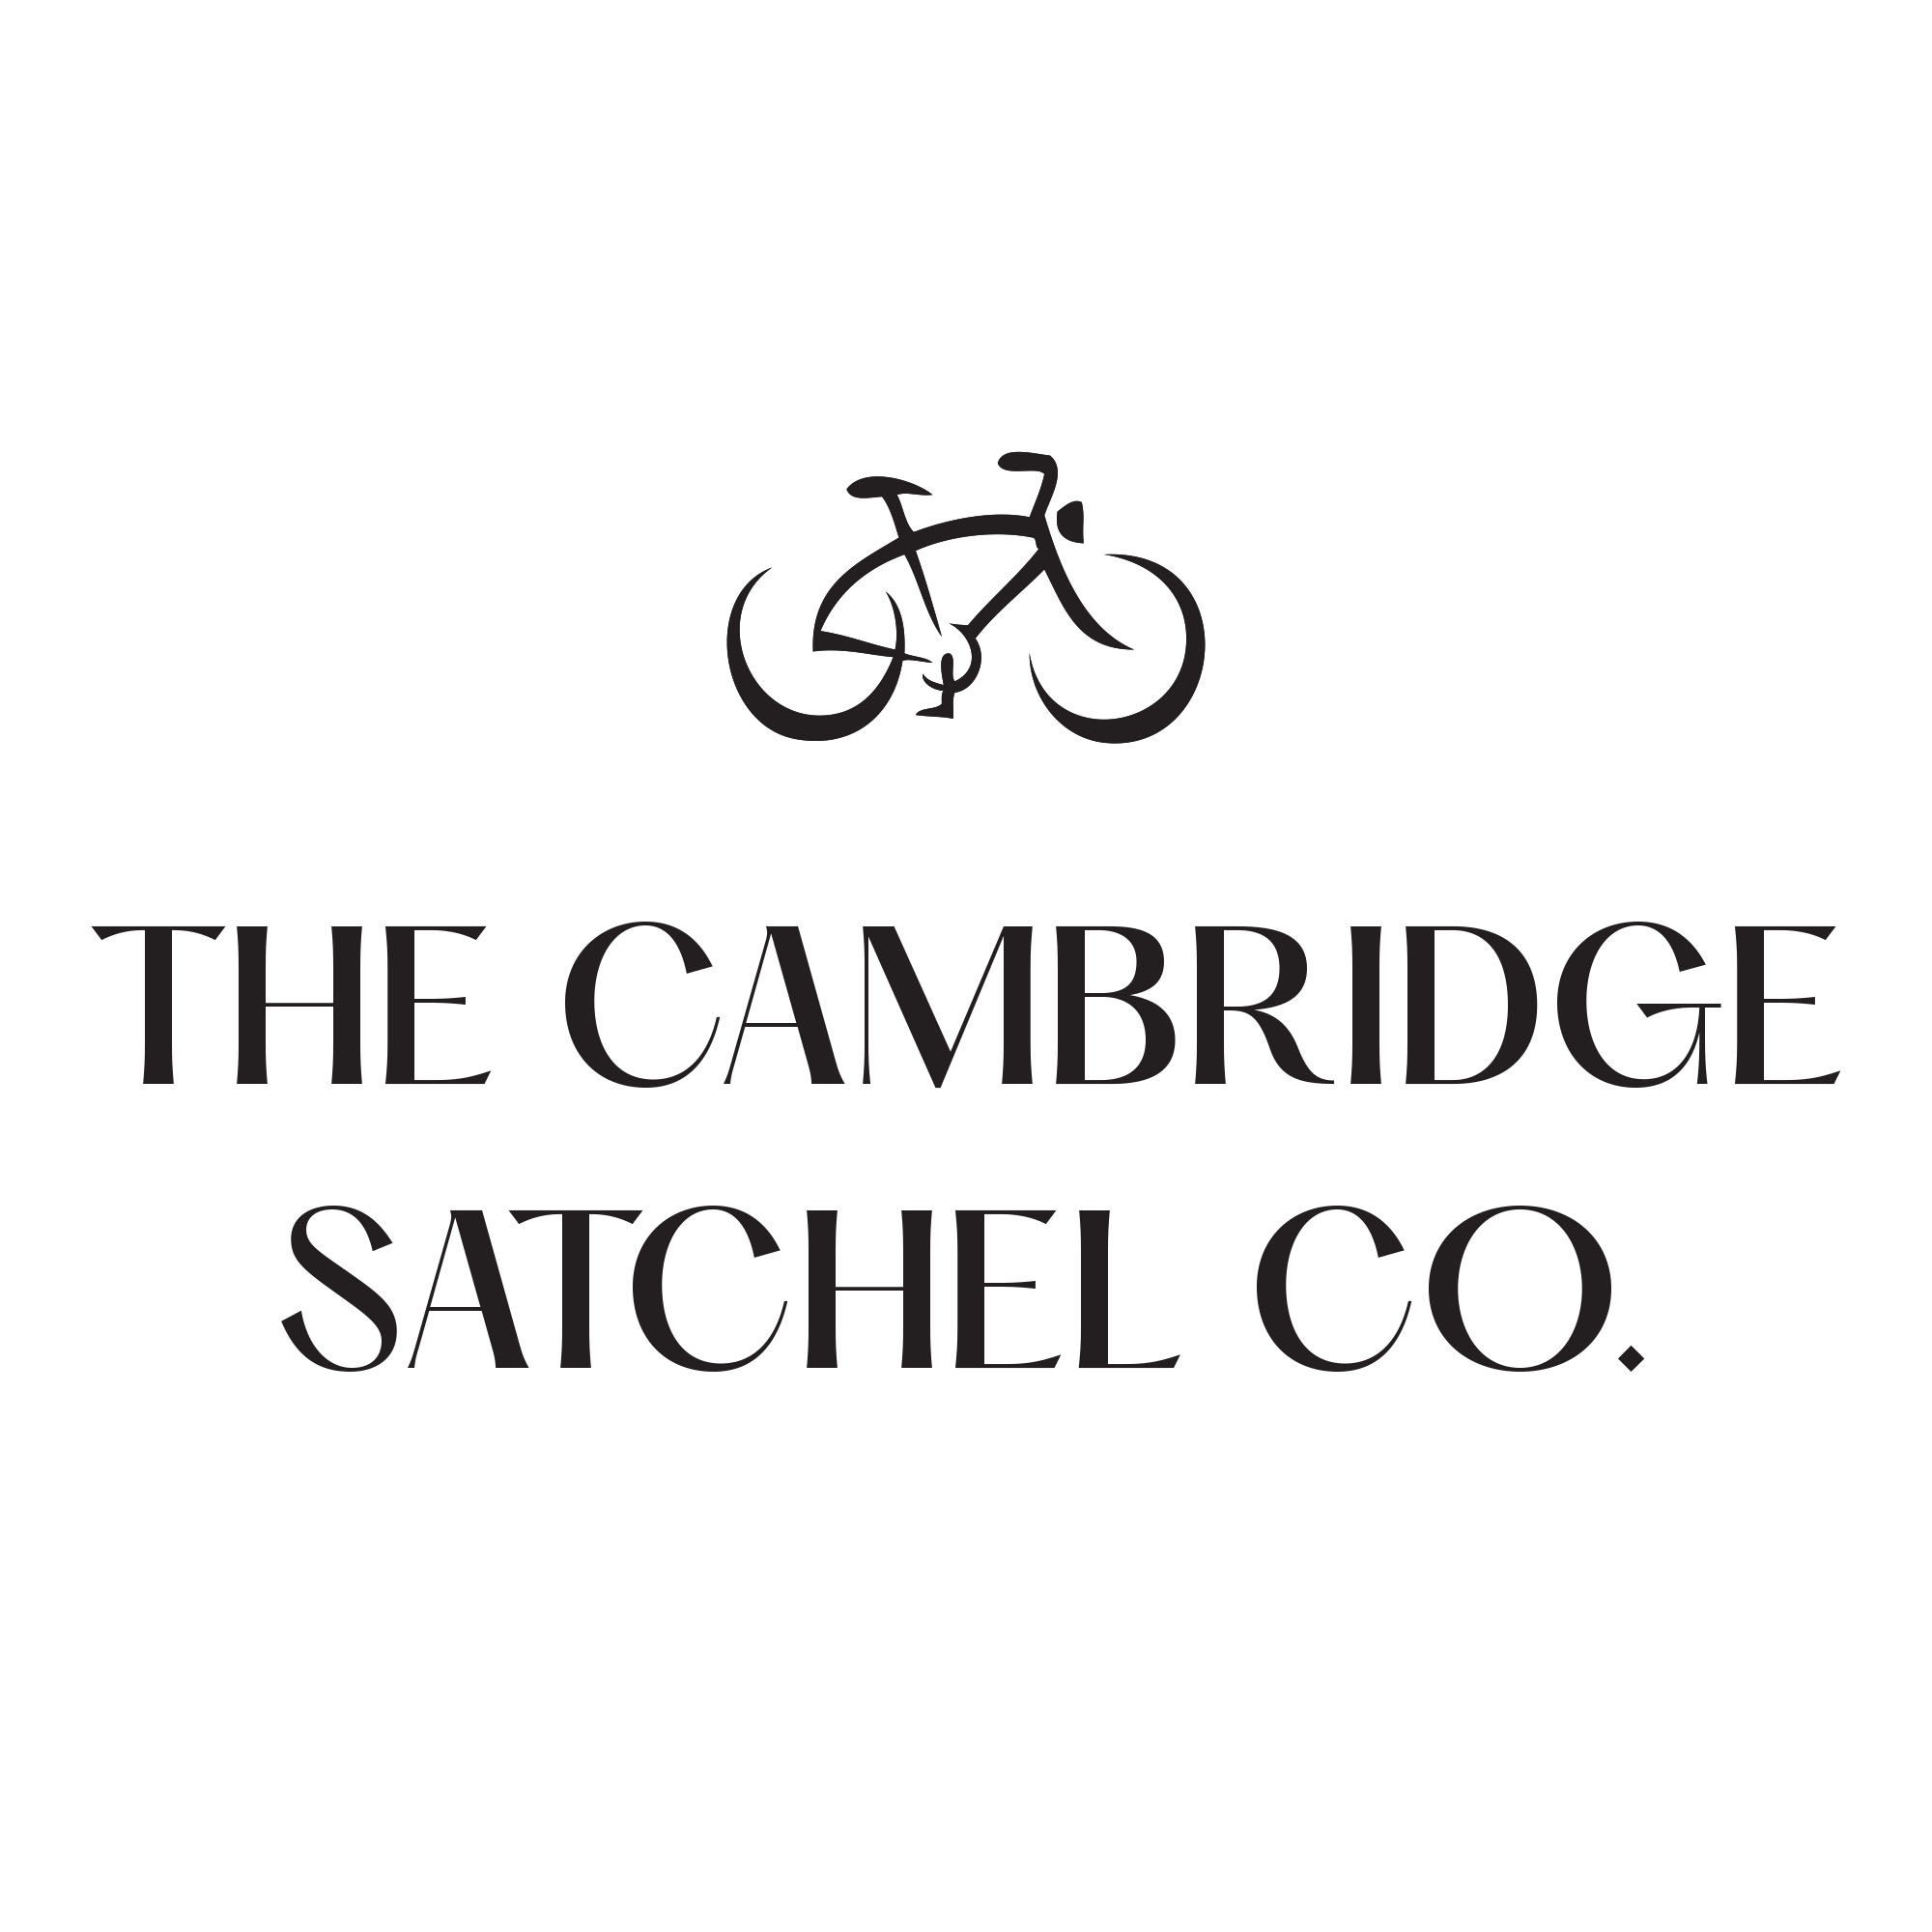 【折扣延长】Cambridge Satchel官网新品直接7折+包邮！上新超多单品！50欧就包邮！不要太轻松！